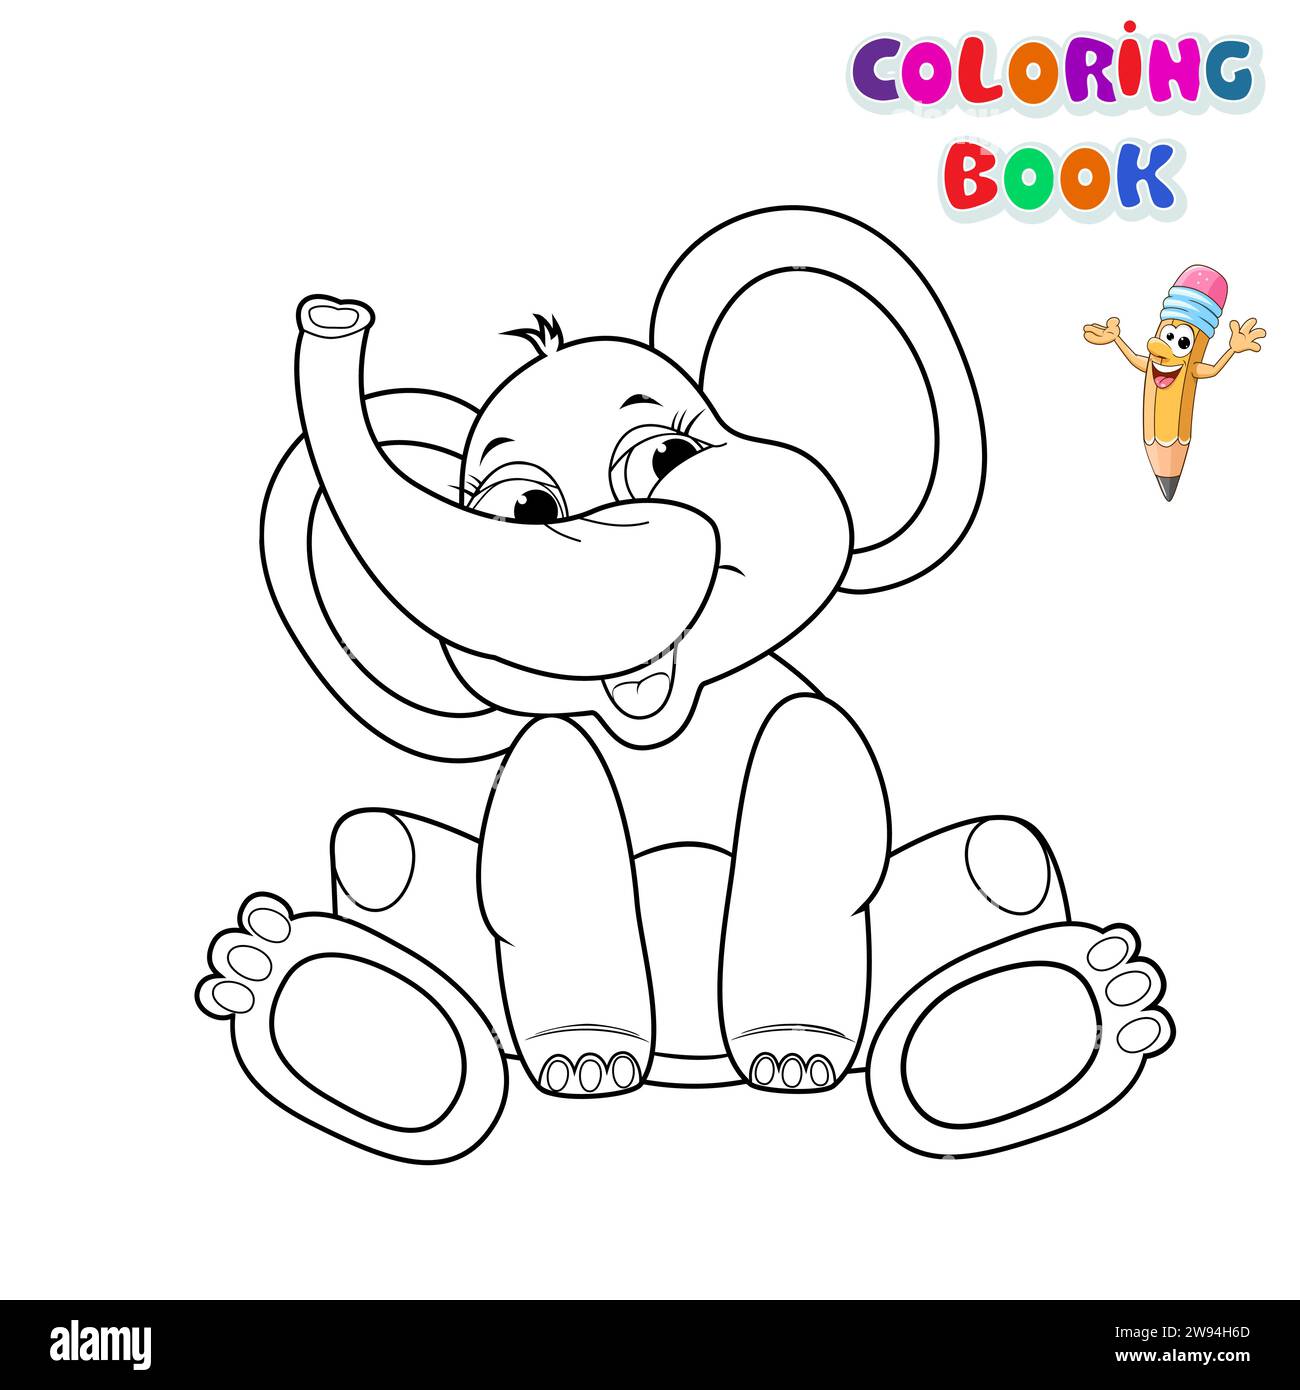 Un petit bébé éléphant de dessin animé est assis et sourit sur un fond blanc. Bébé éléphant pour livre de coloriage. Illustration enfantine pour la coloration. Illustration de Vecteur